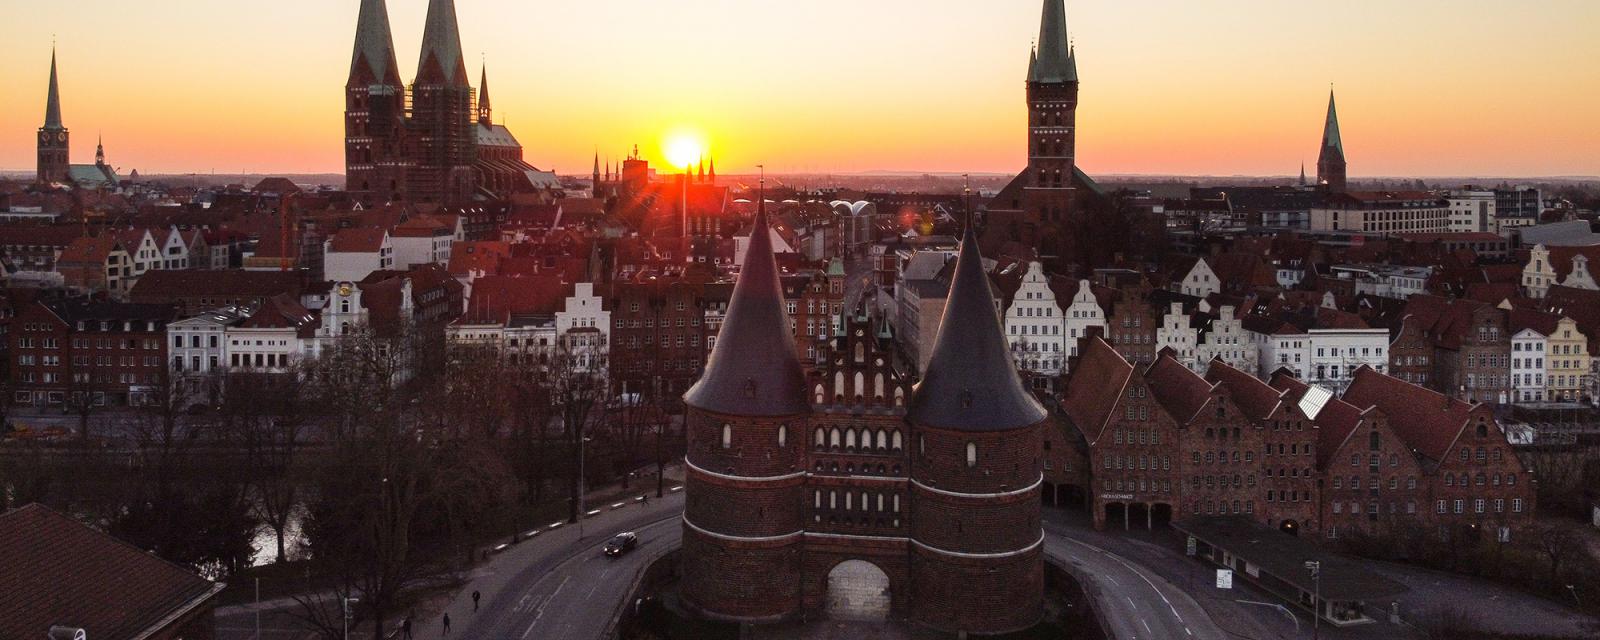 Beleef de historische Hanzestad Lübeck 